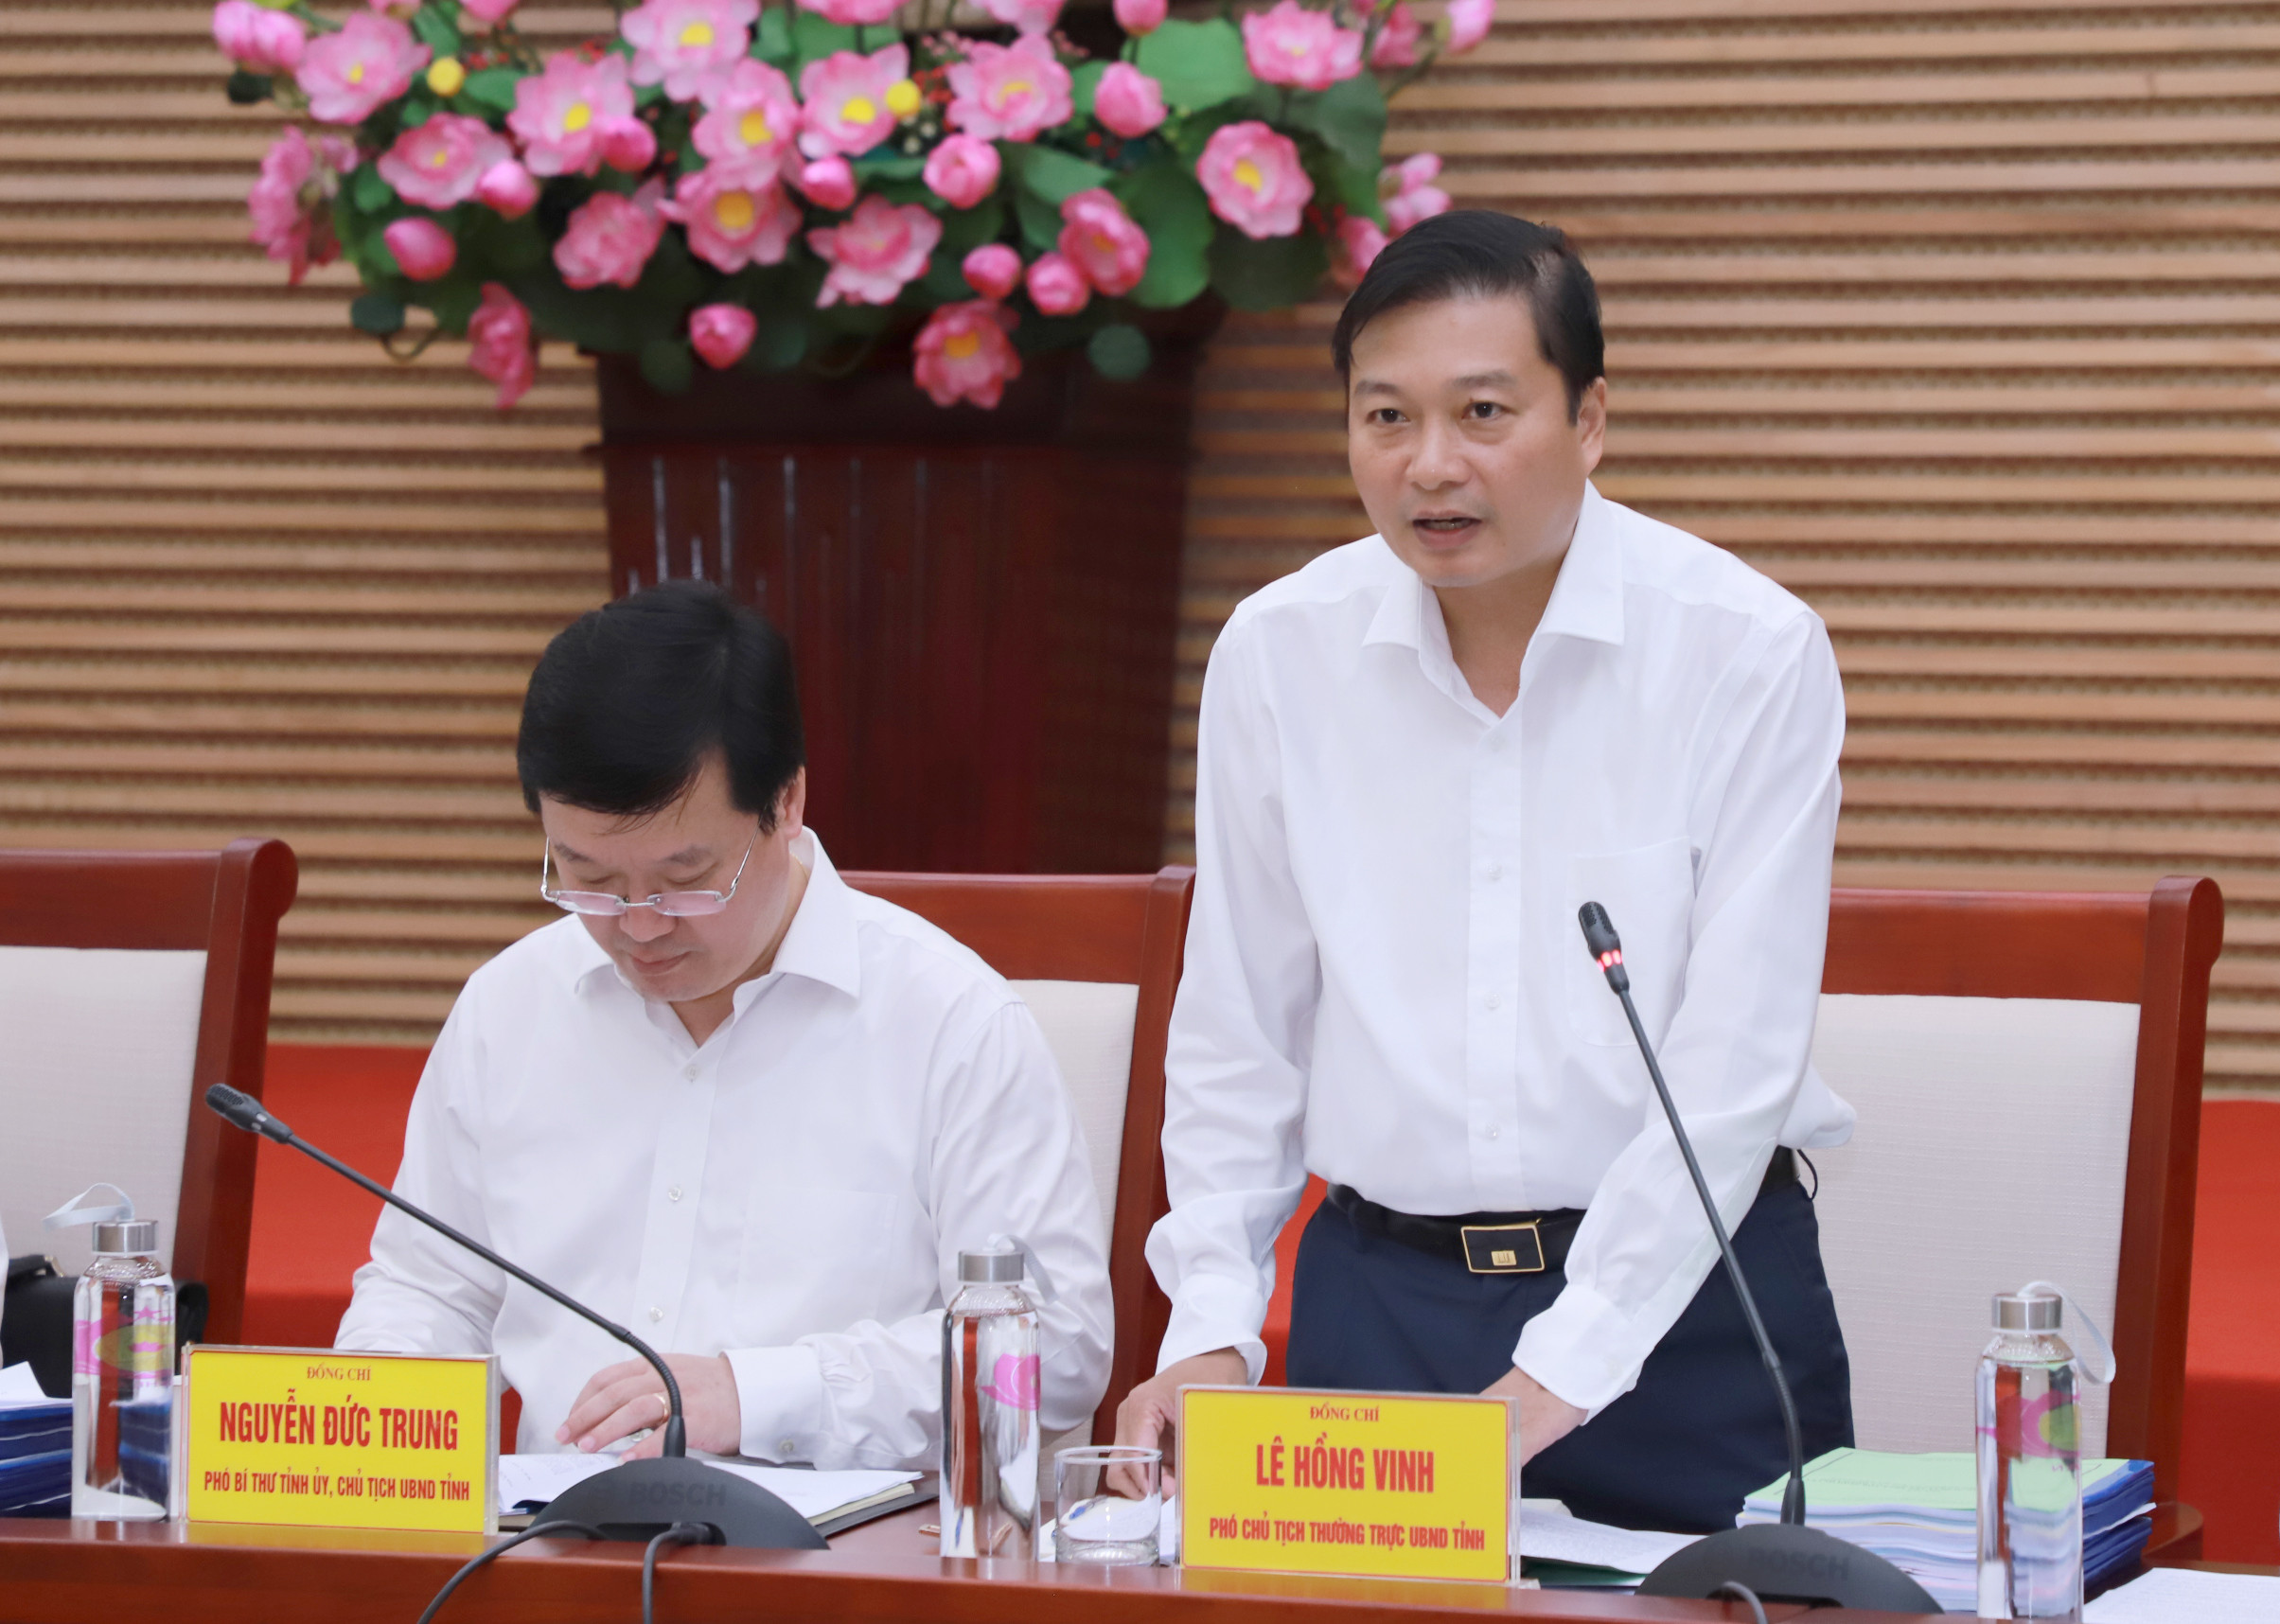 Phó Chủ tịch Thường trực UBND tỉnh Lê Hồng Vinh phát biểu tại cuộc họp. Ảnh: Phạm Bằng